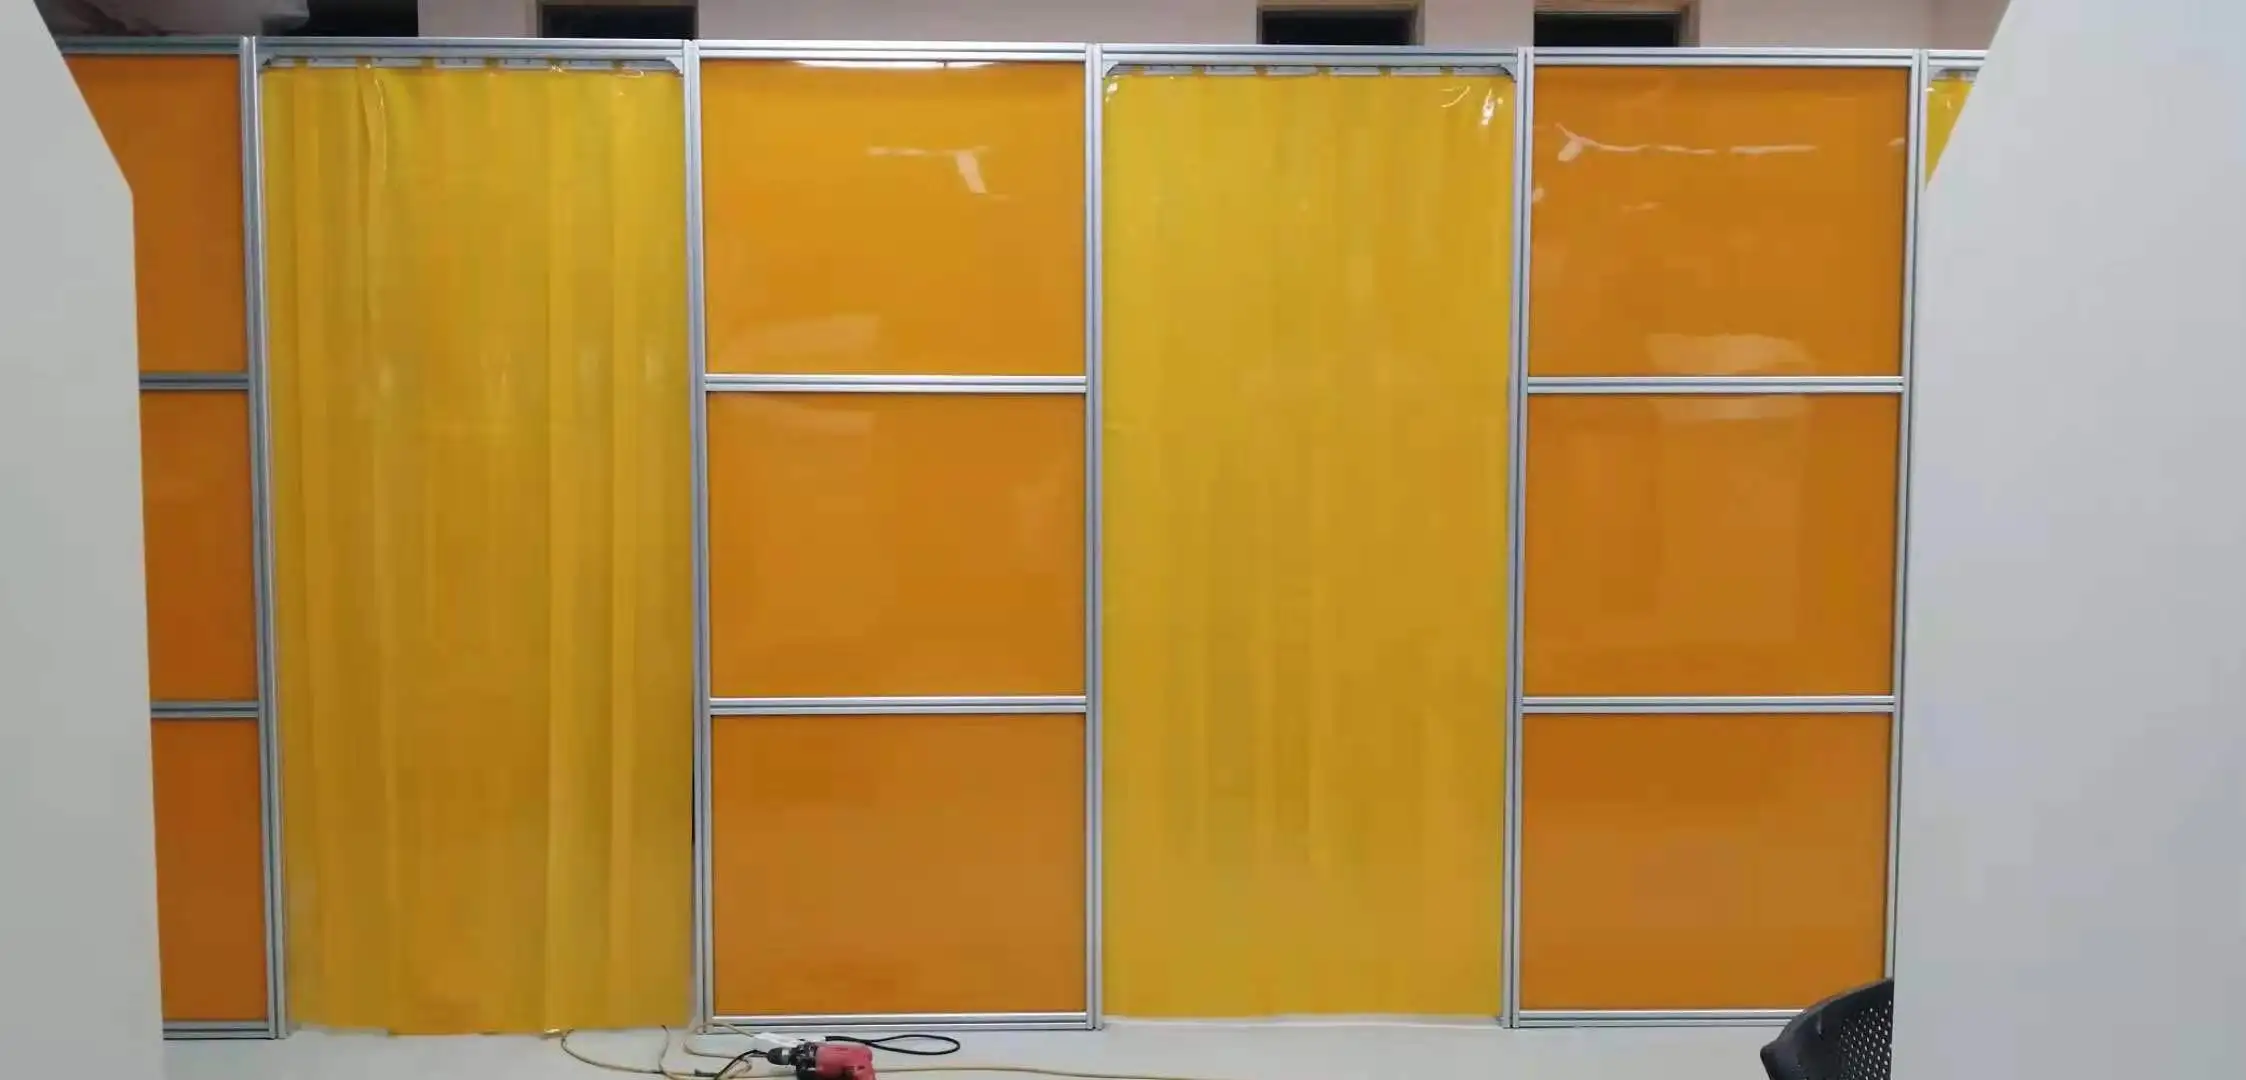 Kaynak ekranı/atölye kaynak çalışması için ekran/endüstriyel koruyucu çit 0.3mm sarı